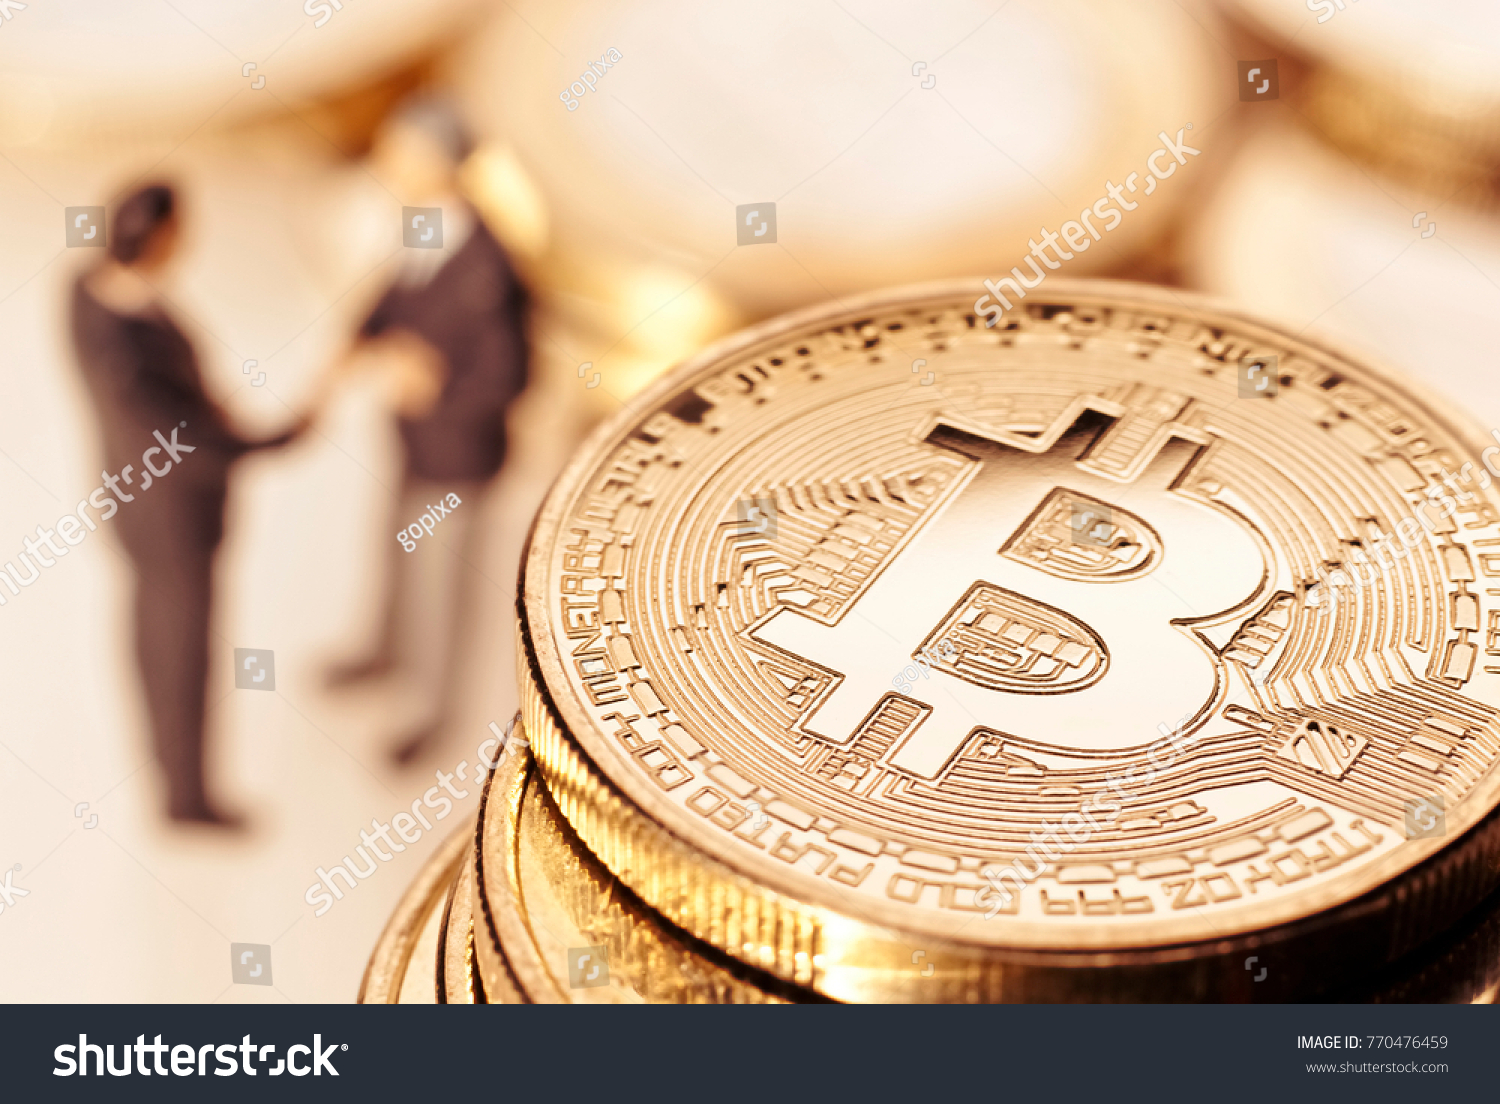 147l 1n bitcoin 2 hands shaking